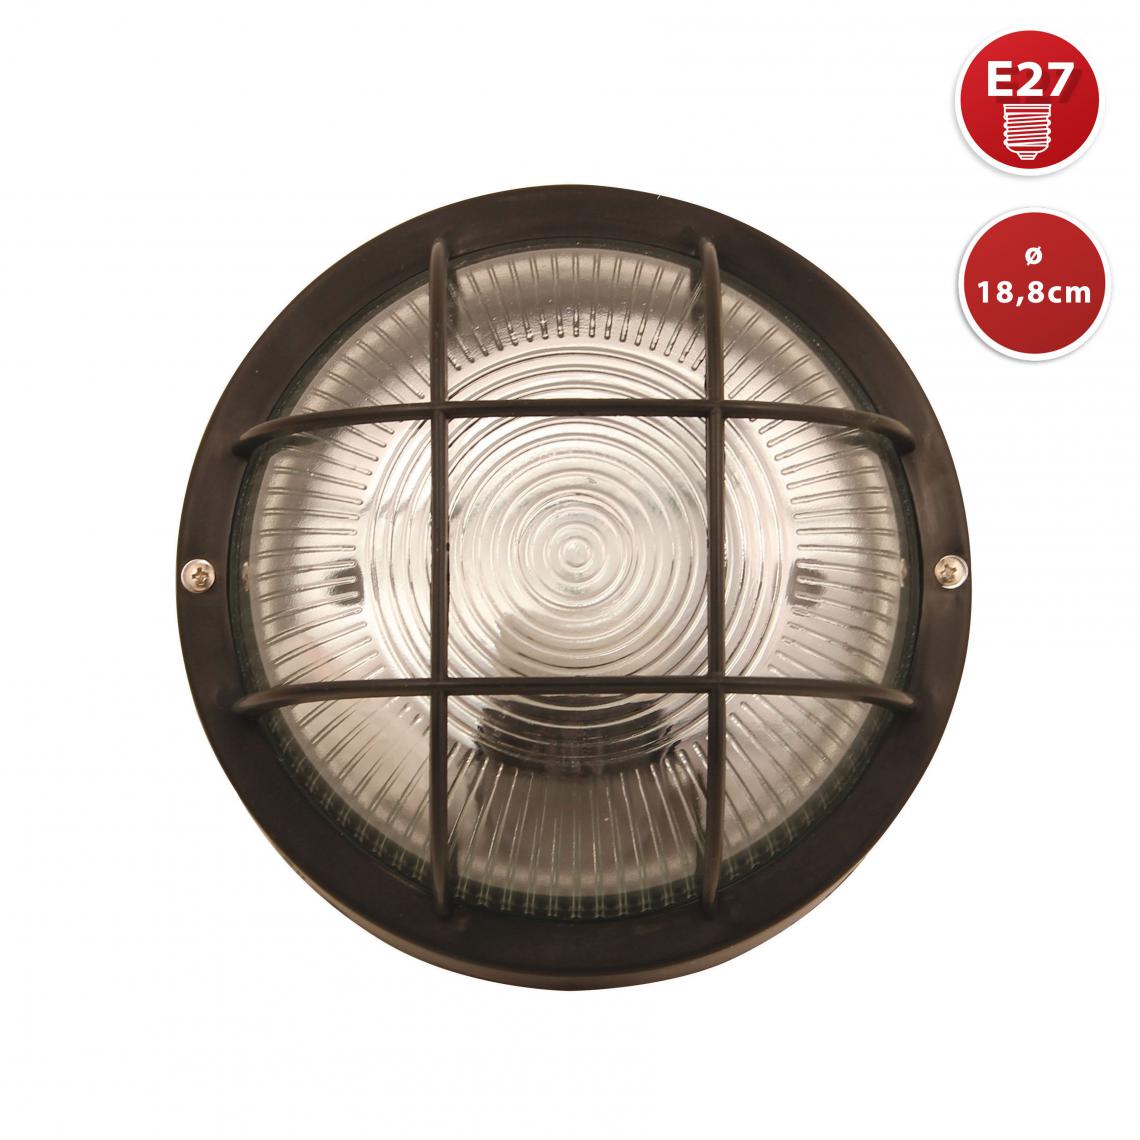 Velamp - BUBBLE: hublot rond en verre et plastique. E27 max 60W - Noir - Spot, projecteur